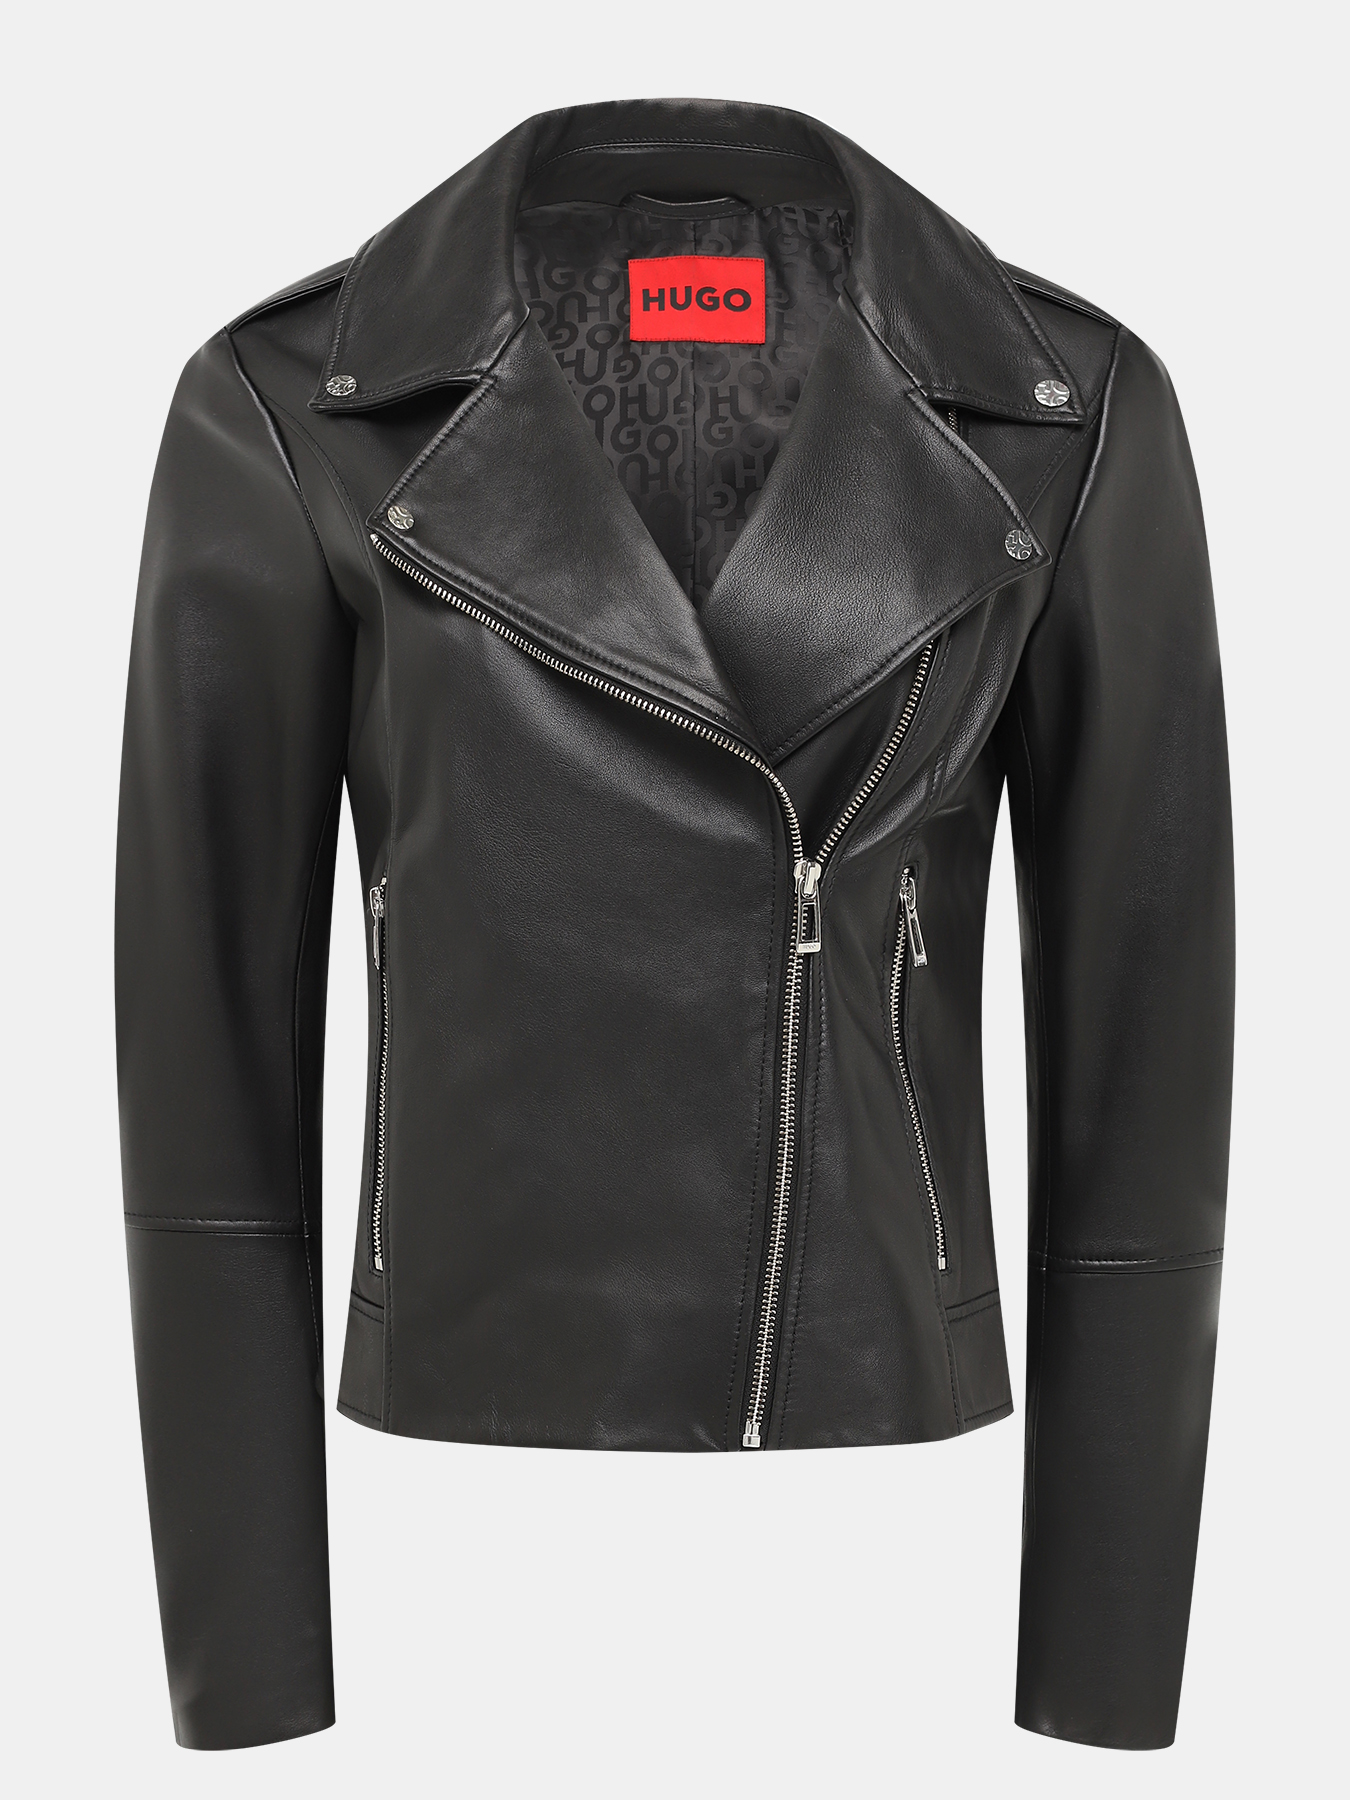 Кожаная куртка Larella HUGO 434520-044, цвет черный, размер 46-48